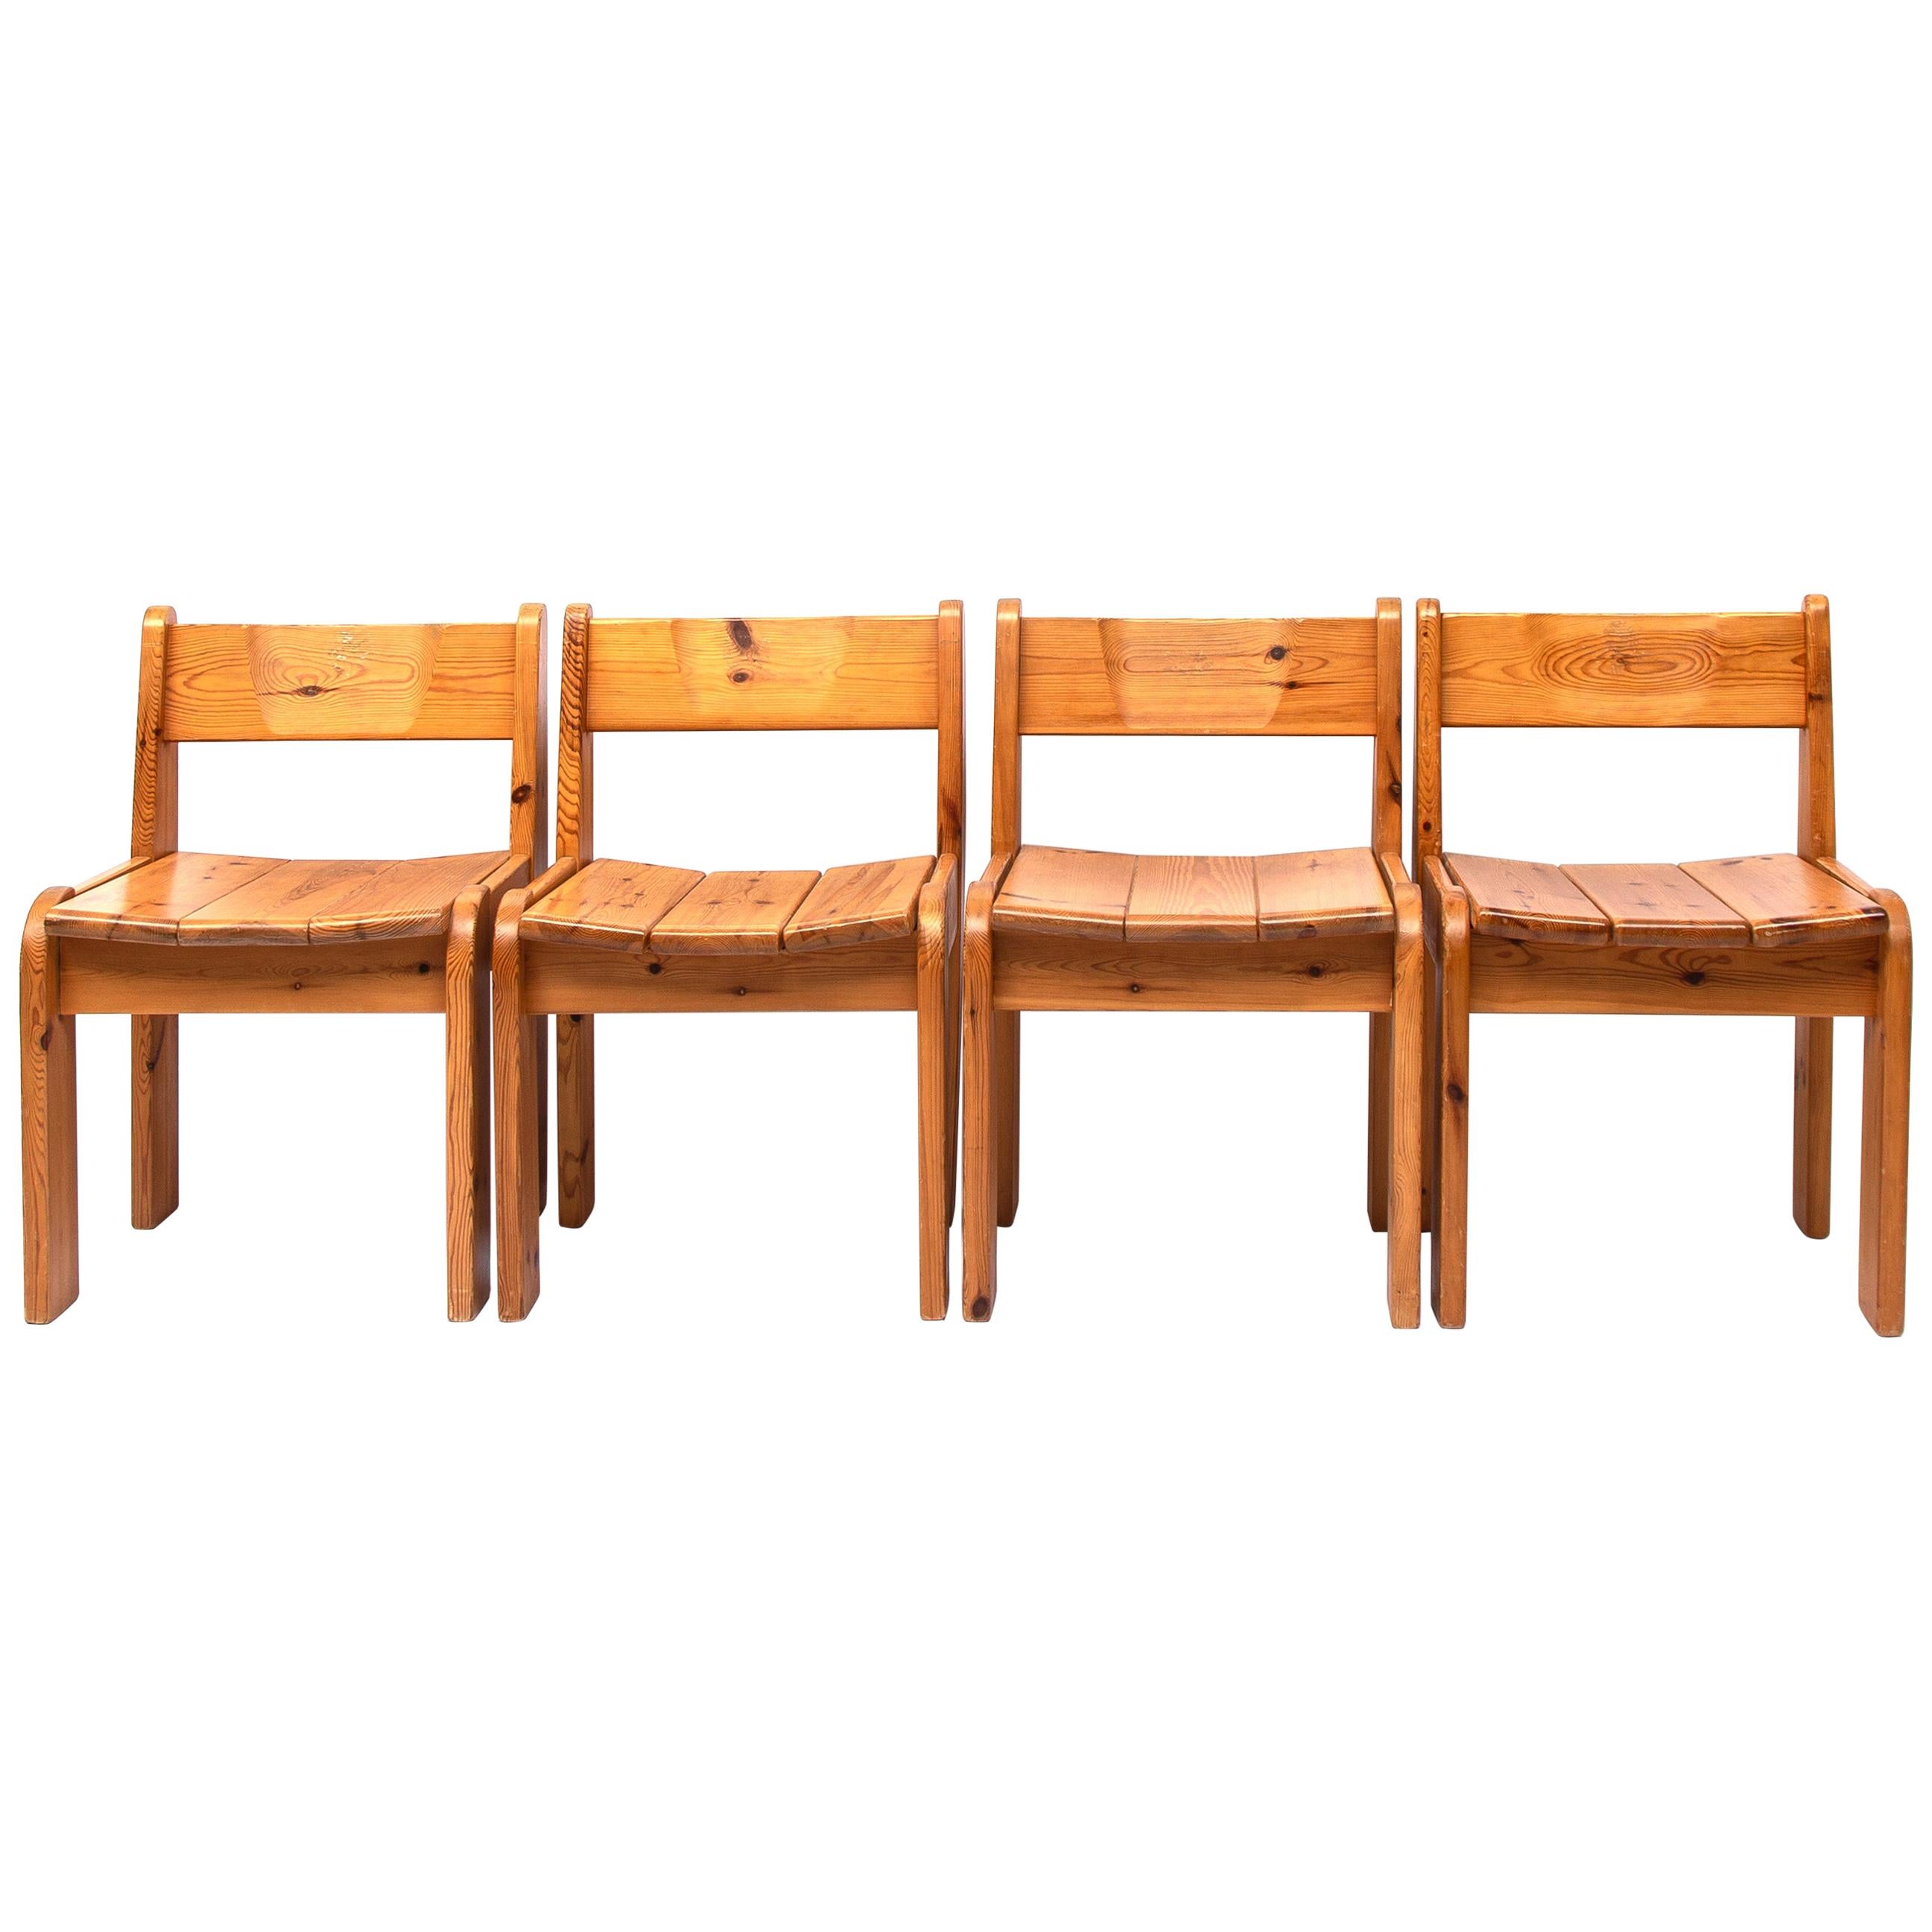 Pine Dining Chairs by Ate van Apeldoorn, 1970s